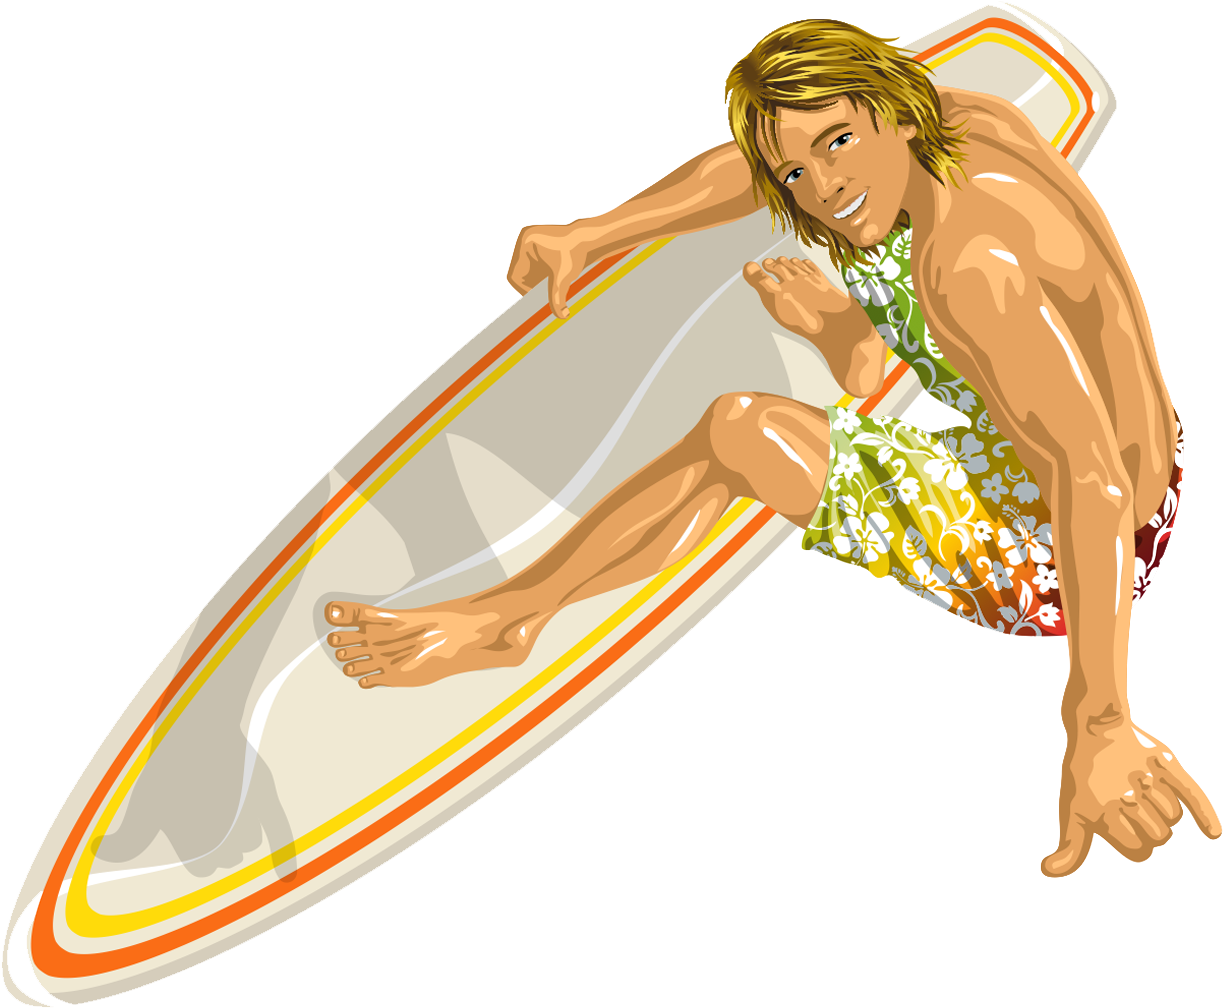 Best Surfer man on surf board riding ocean wave Illustration download in  PNG & Vector format